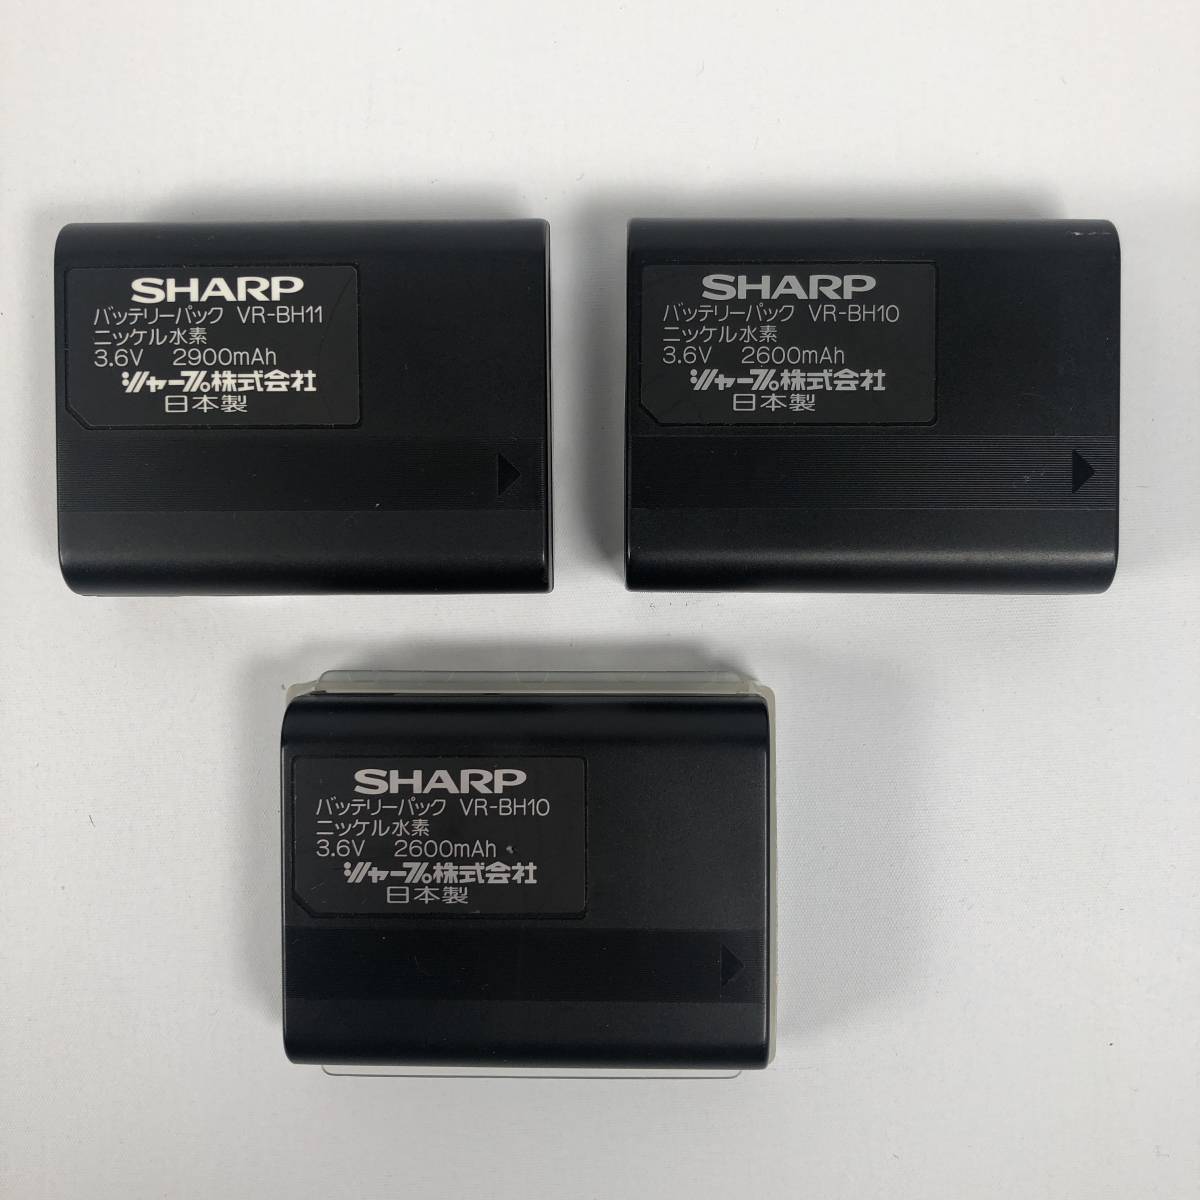 SHARP シャープ 液晶ビューカム/VL-EL420 ACアダプター/VR-AA75 DCケーブル バッテリー/VR-BH10 VR-BH11 AVボックス 8ミリビデオカメラ_画像8